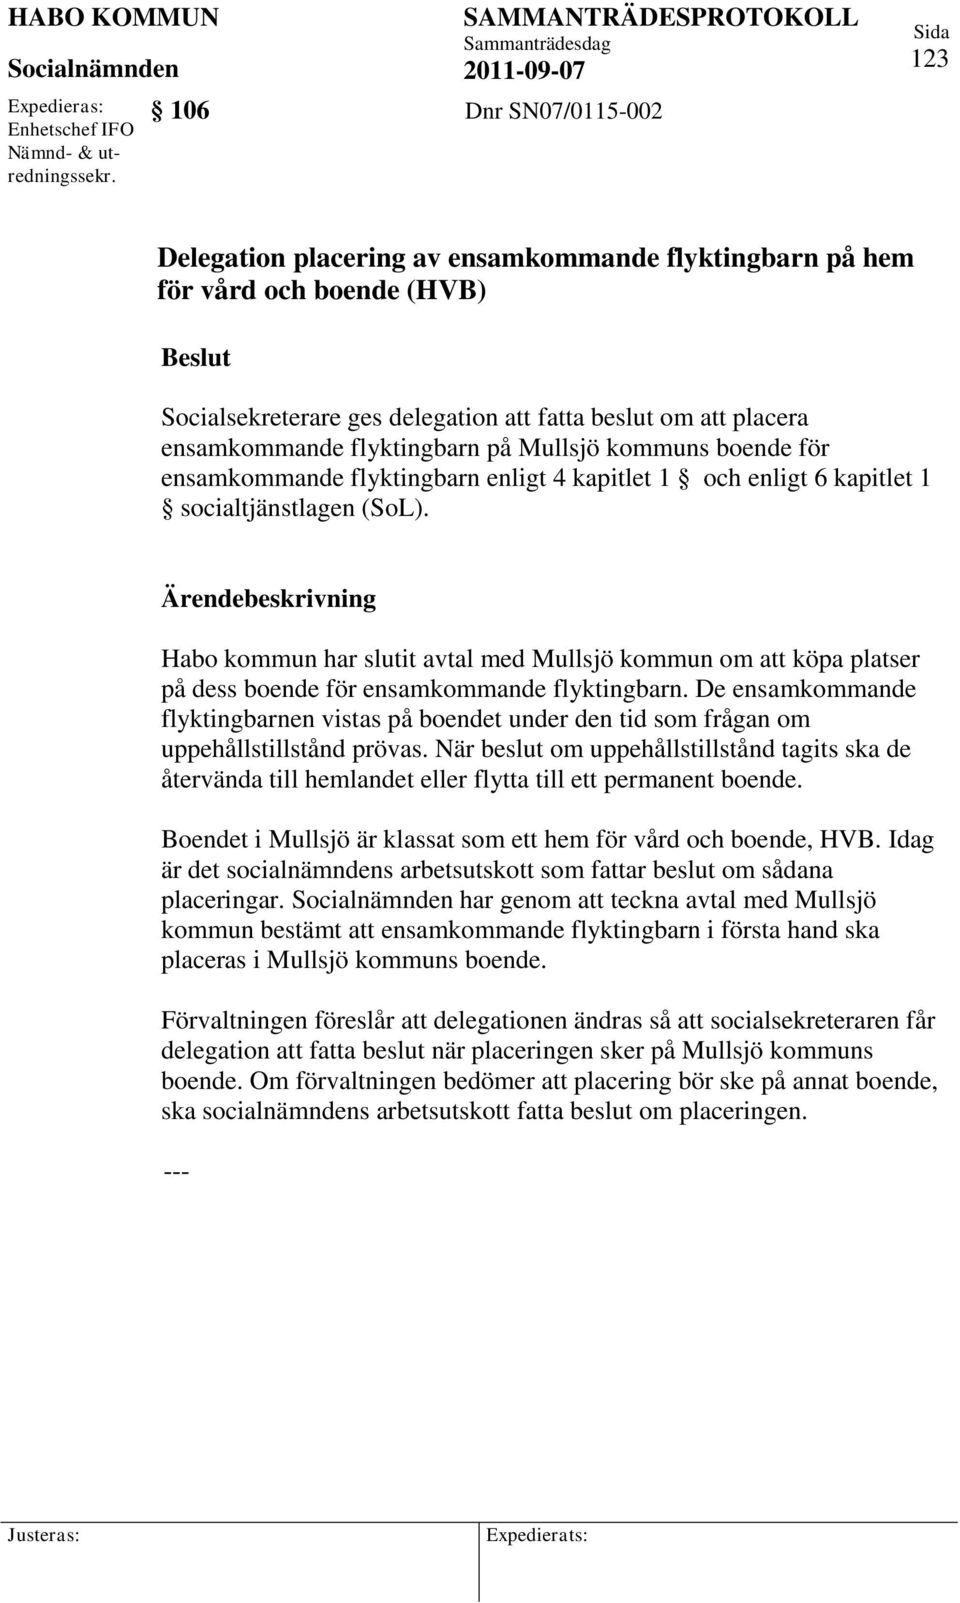 flyktingbarn på Mullsjö kommuns boende för ensamkommande flyktingbarn enligt 4 kapitlet 1 och enligt 6 kapitlet 1 socialtjänstlagen (SoL).